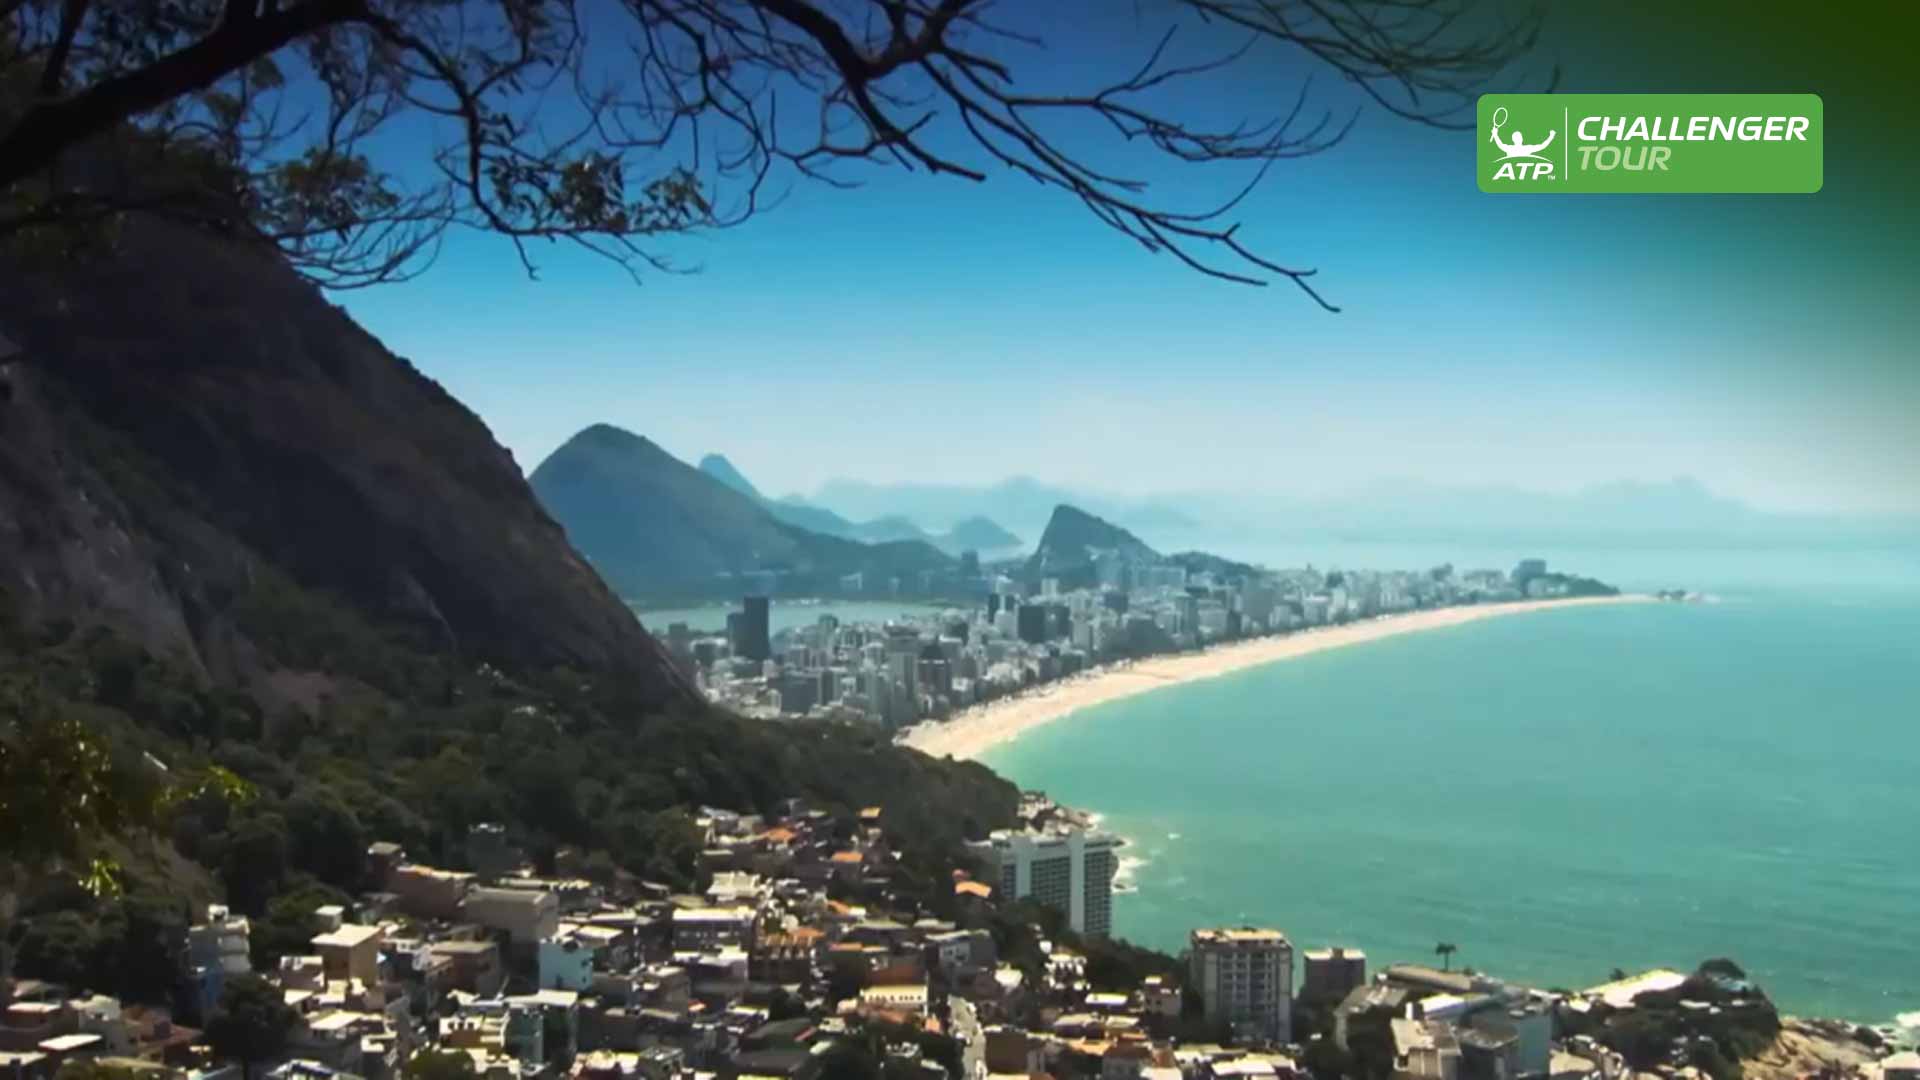 Rio atp 2022 Rio